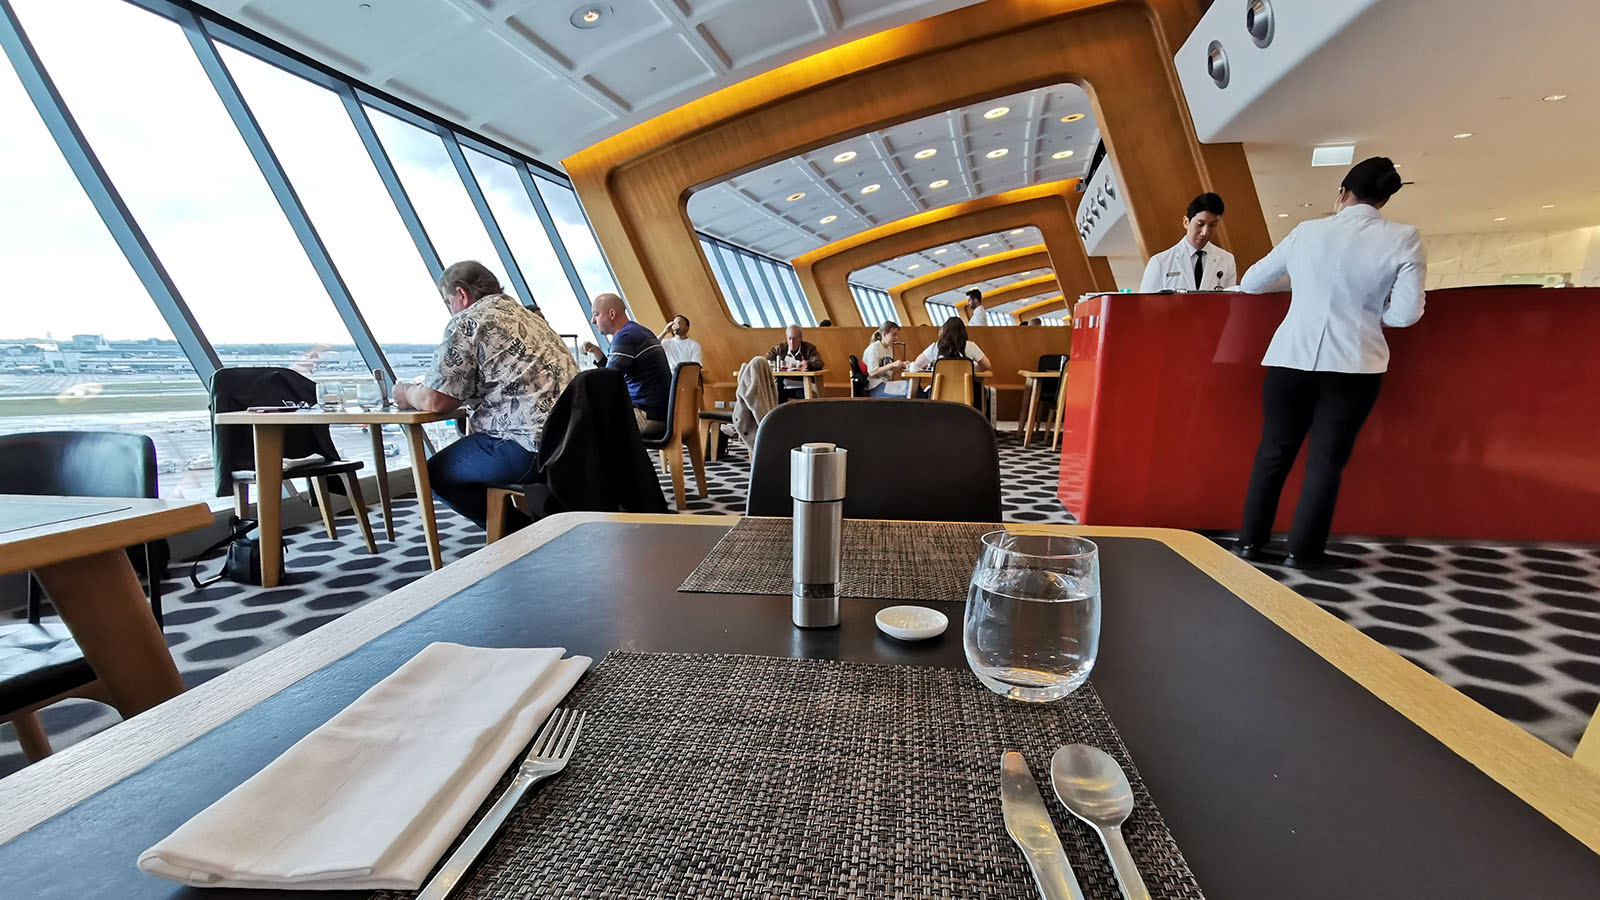 Restaurant in Sydney's Qantas First Lounge